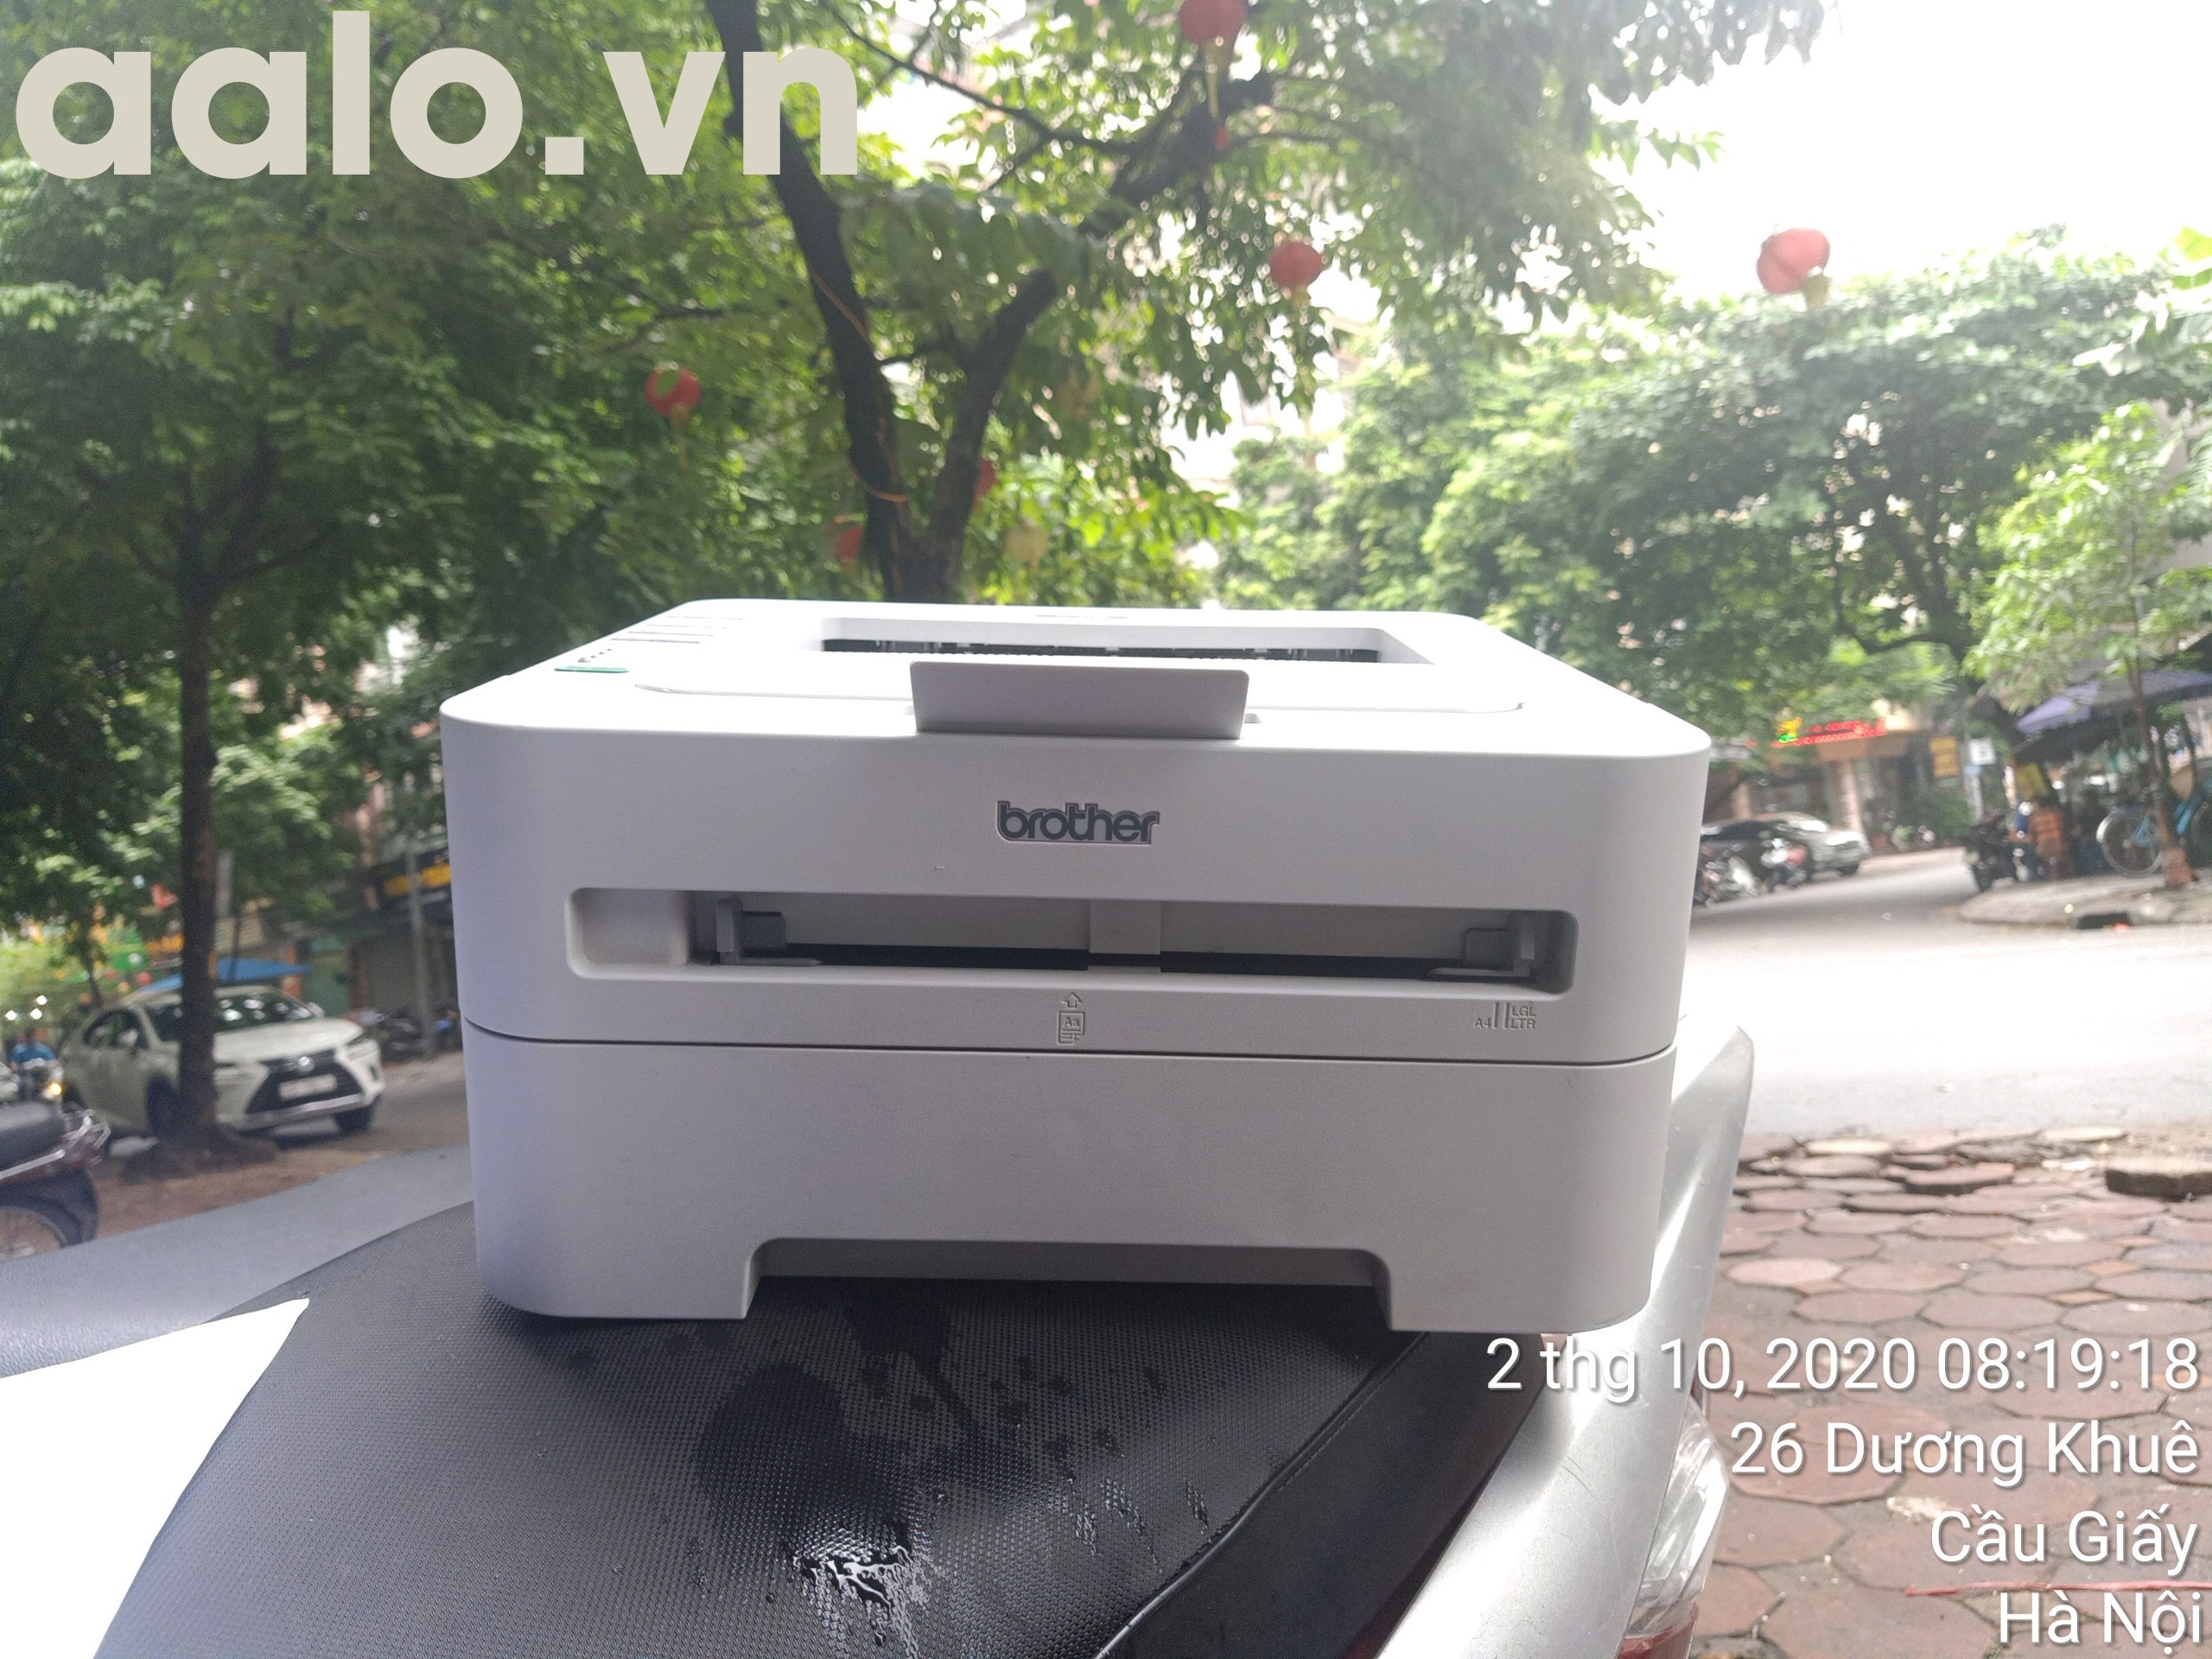 Máy in Laser đen trắng Brother HL-2130 - Khổ A4 ( kèm hộp mực ,  dây nguồn , dây USB mới ) - aalo.vn